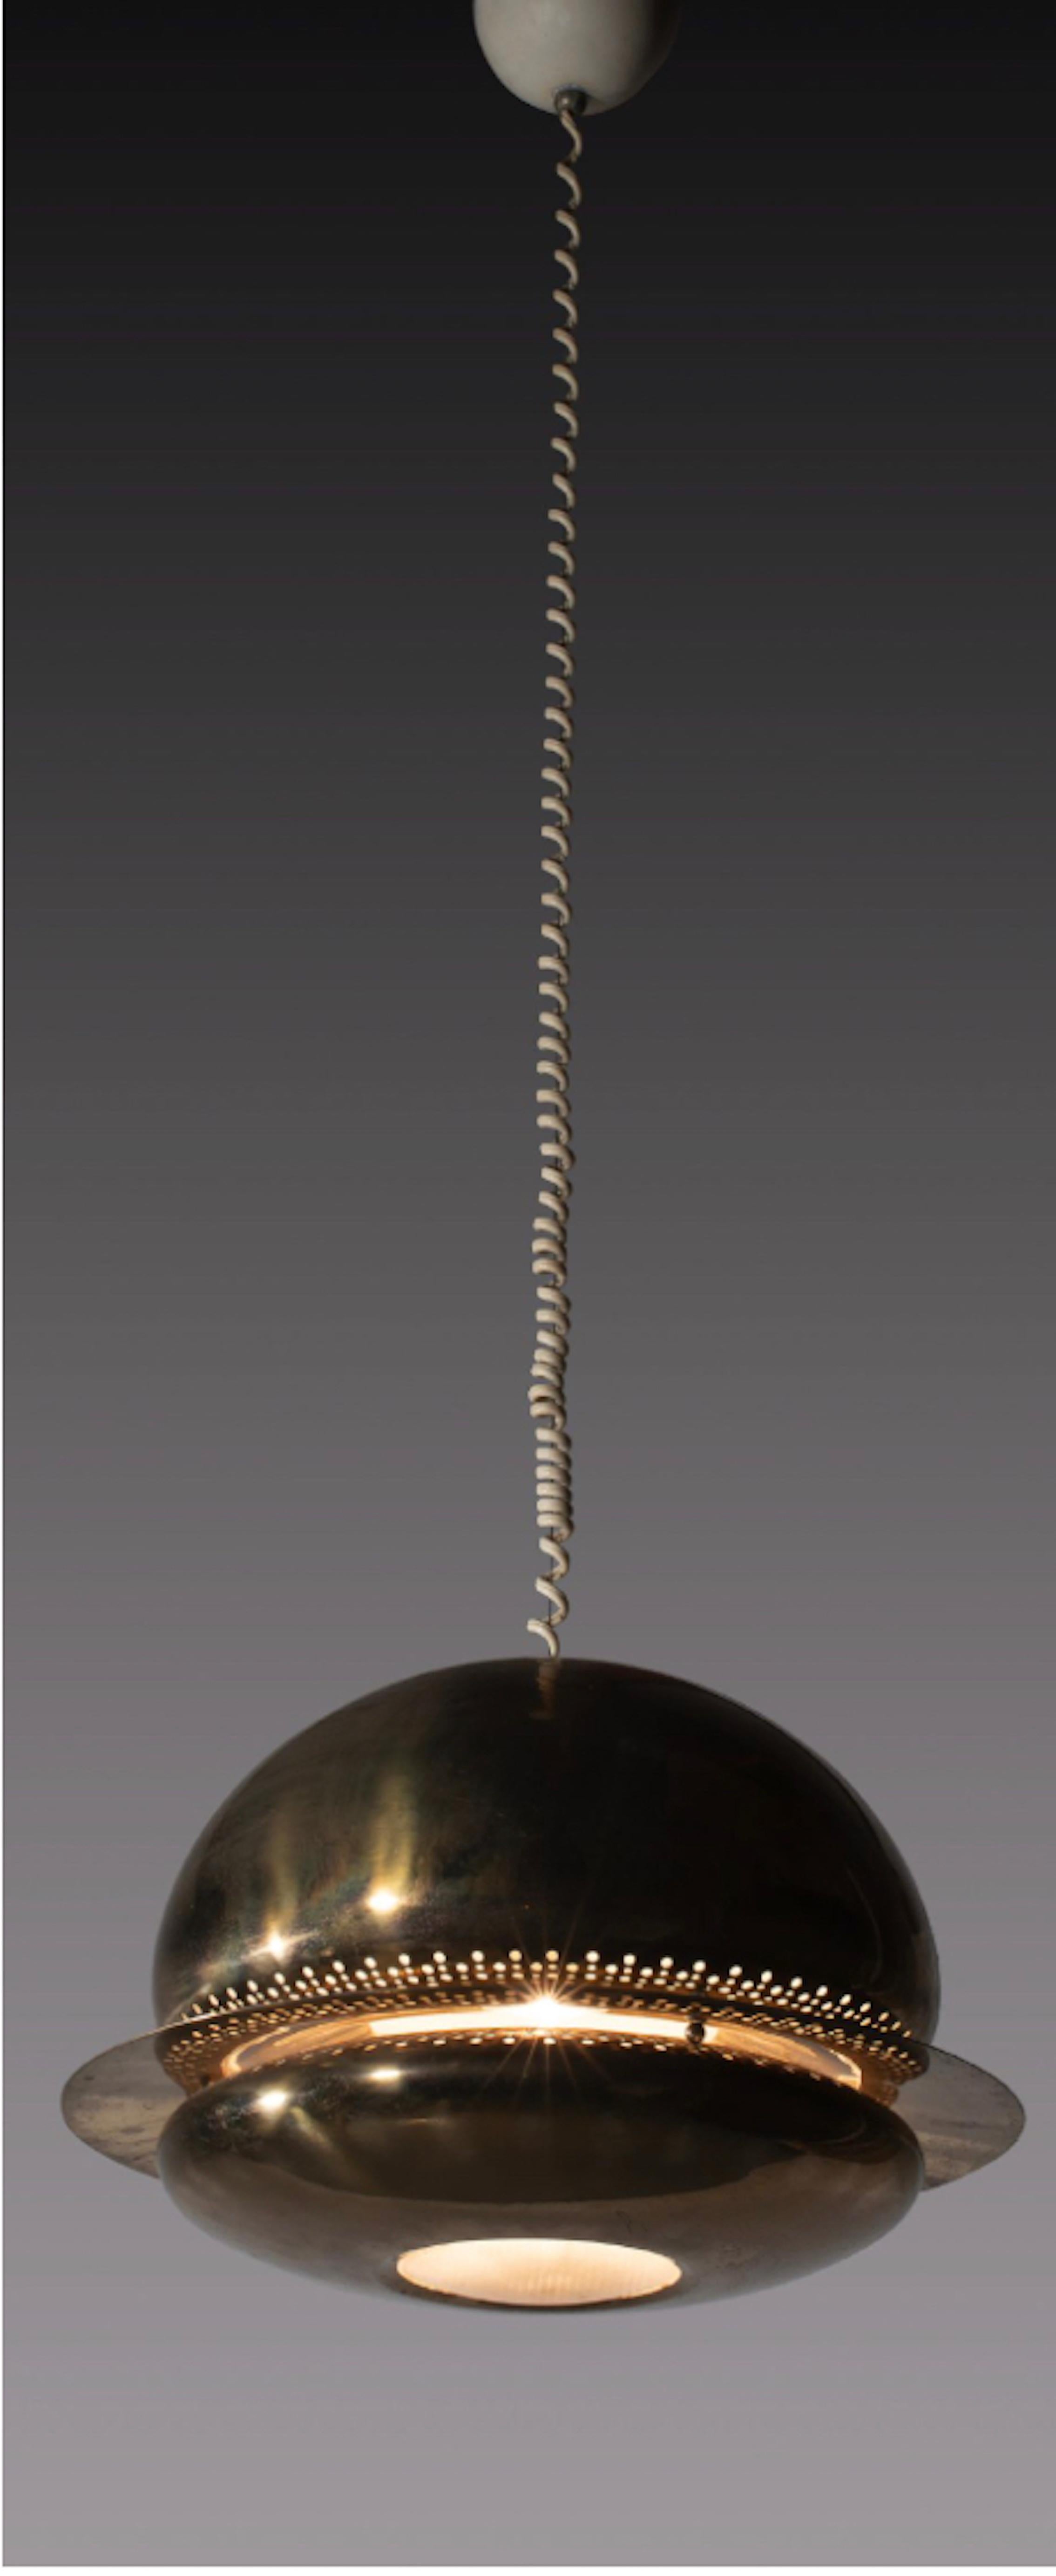 Pendentif 'Nictea' par Afra et Tobia Scarpa pour Flos, Italie 1961

La lampe Nictea a été créée en 1961 et est célèbre pour son design unique et élégant. Elle se caractérise par un abat-jour délicat et sculptural, dont la lumière est filtrée par des